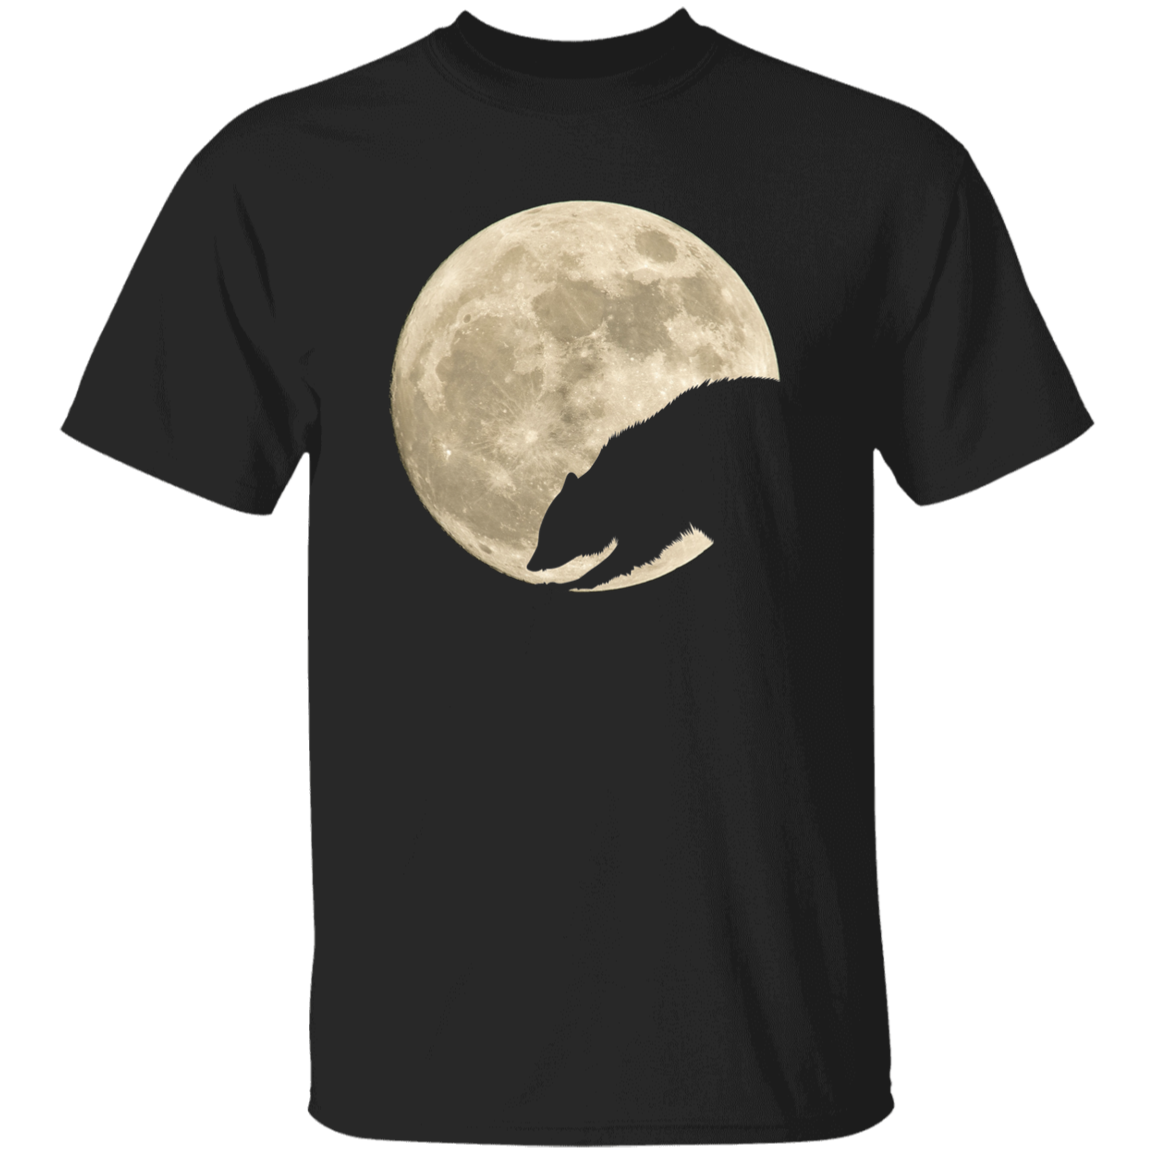 Raccoon Moon Youth Shirts - T-Shirt, Long Sleeve Tee, Sweatshirt, Hoodie